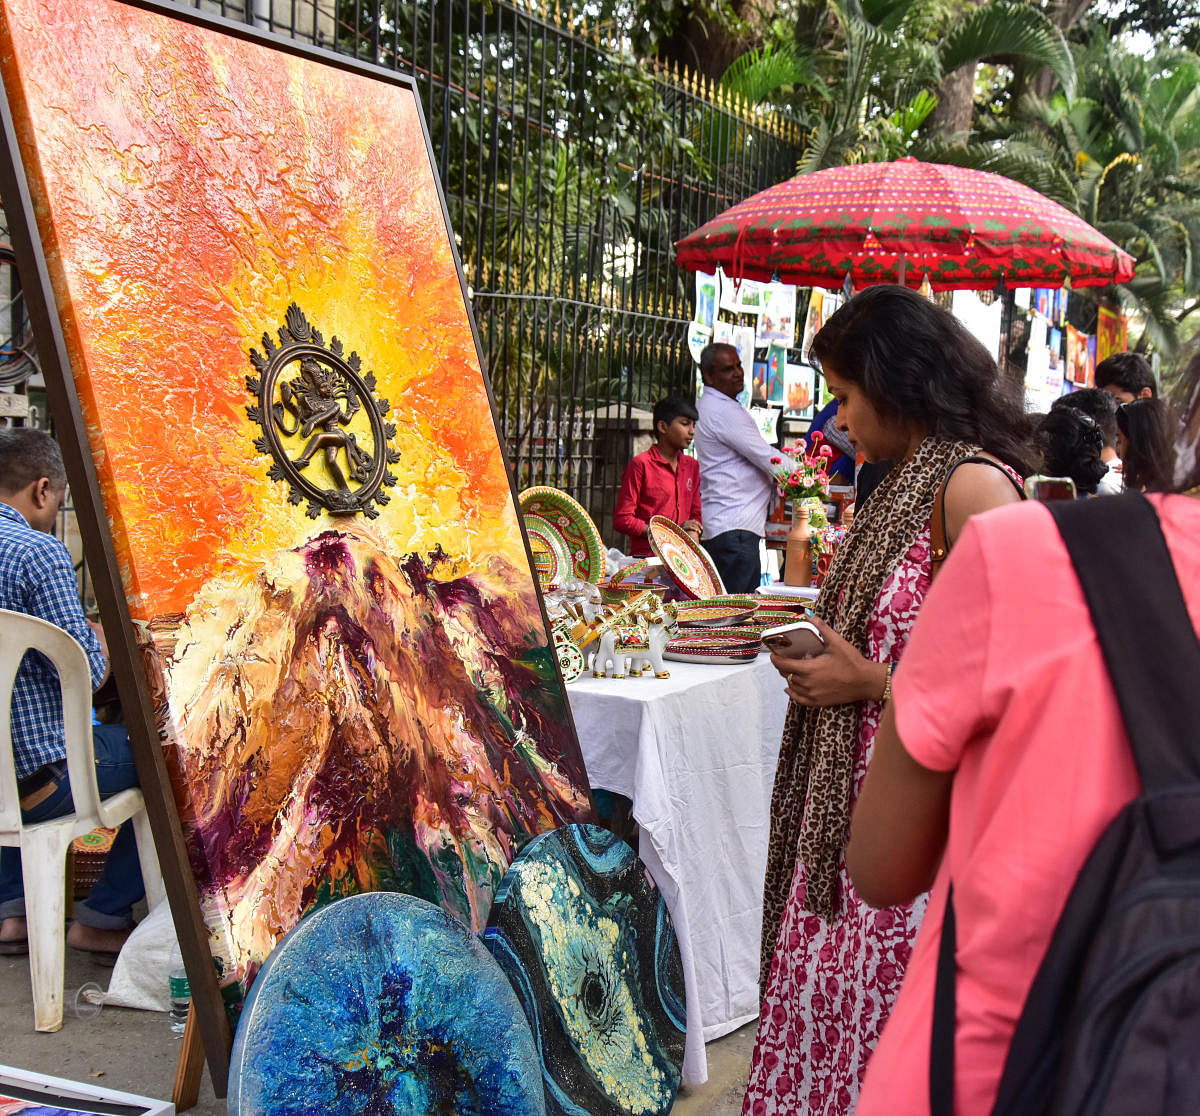 ಕಲಾವಿದೆ ಕವಿತಾ ಅವರ ₹3 ಲಕ್ಷ ಮೌಲ್ಯದ ಕಲಾಕೃತಿ ಗಮನ ಸೆಳೆಯಿತು.